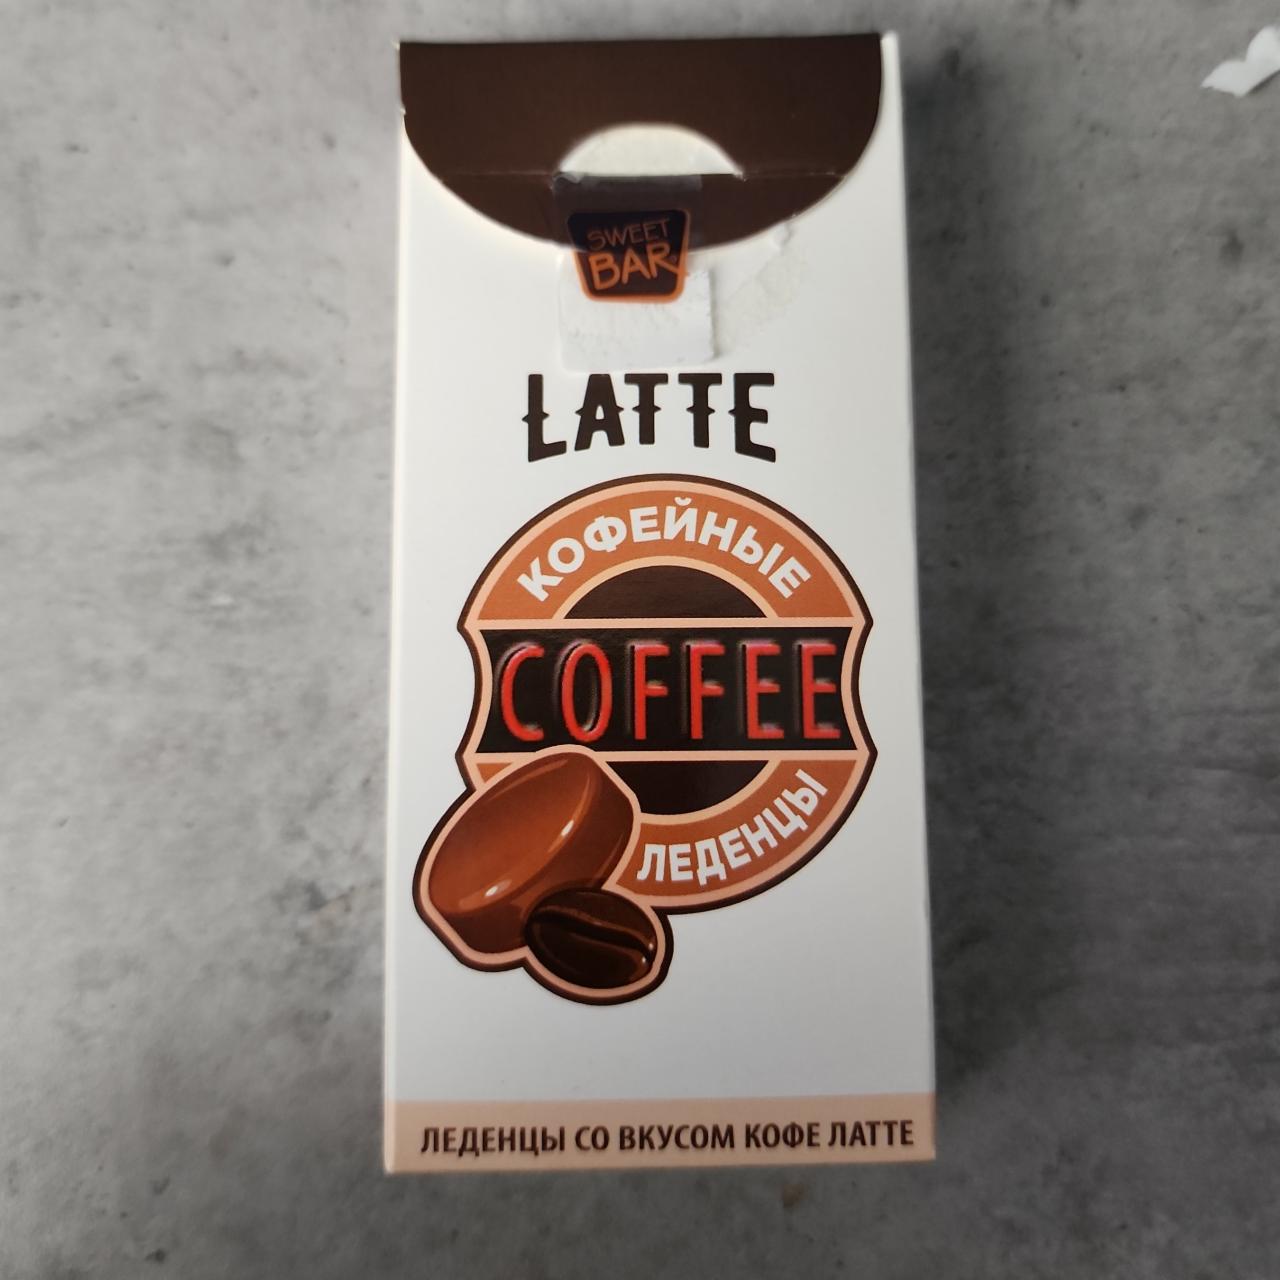 Фото - Кофейные леденцы coffee со вкусом кофе латте Sweet bar Конфитрейд